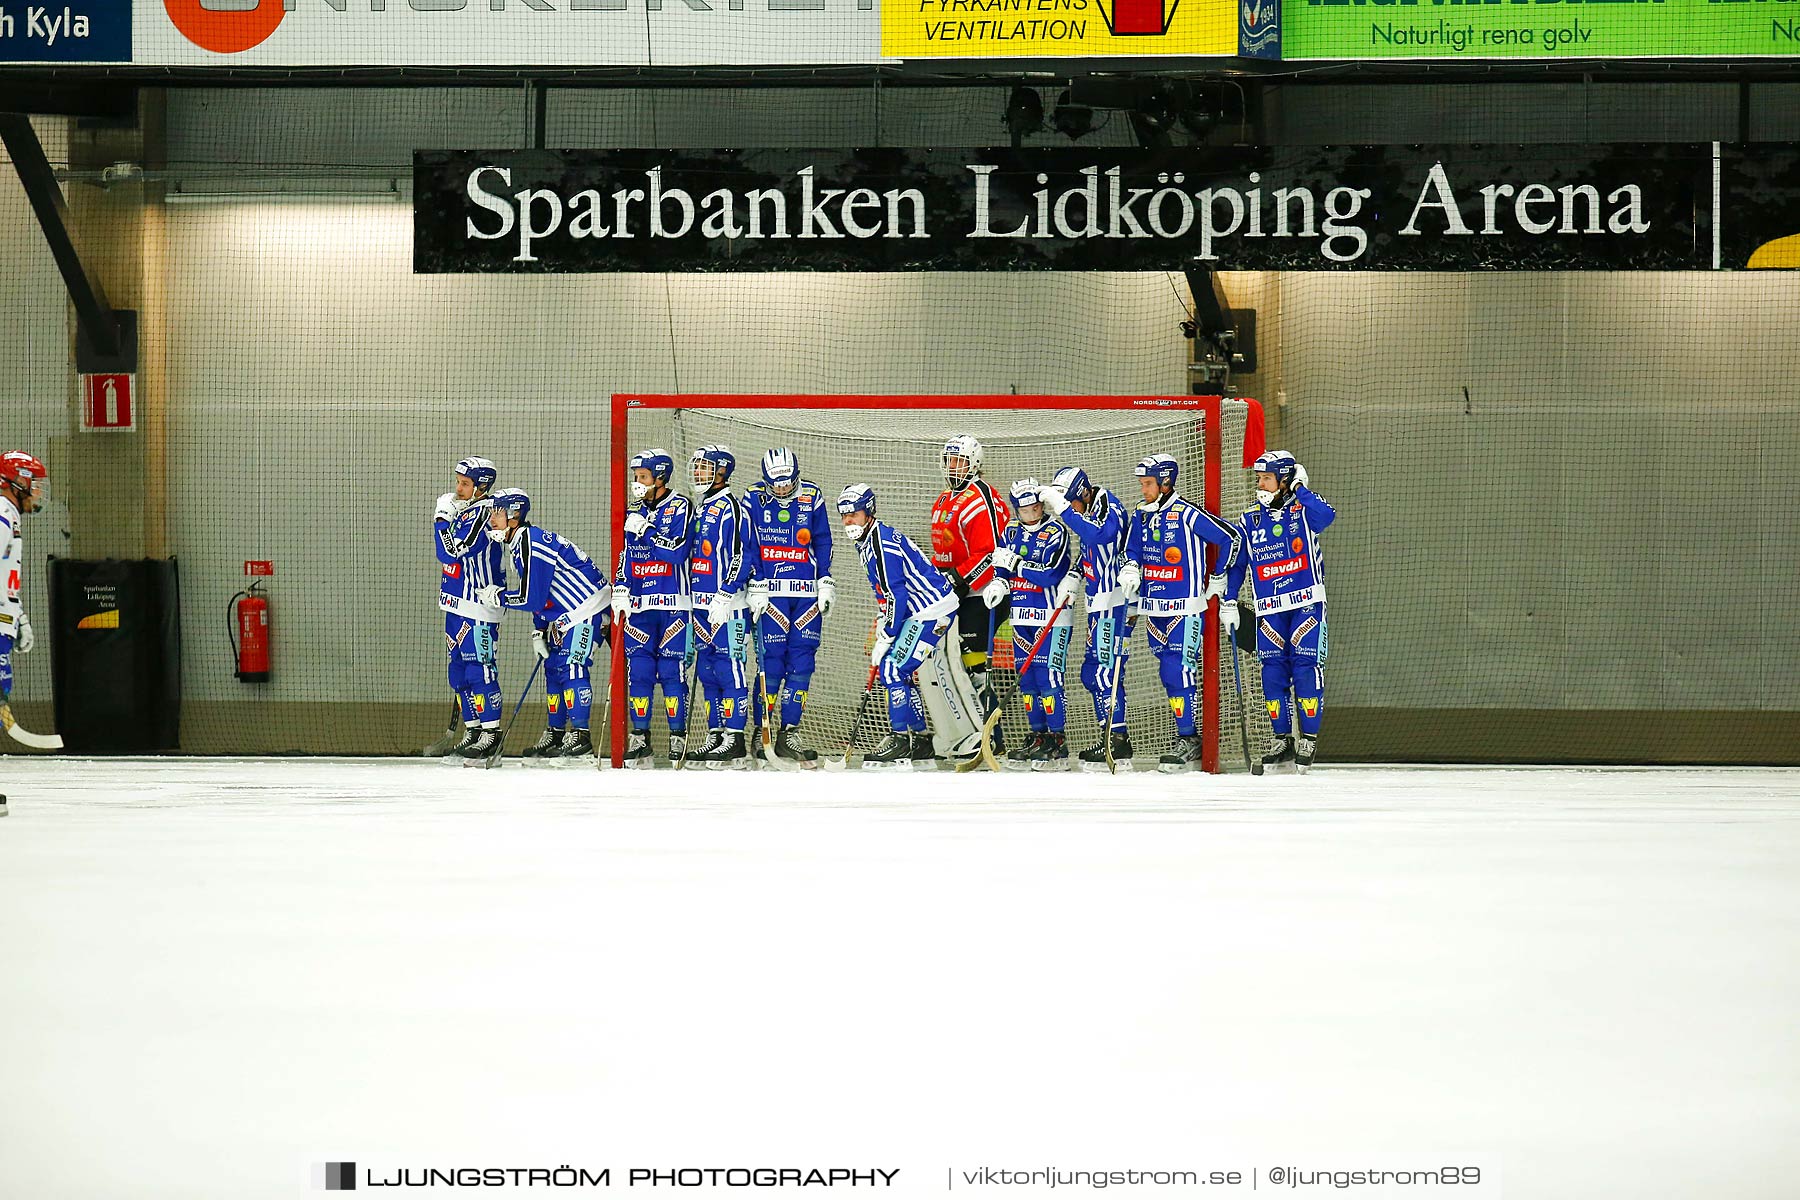 Villa Lidköping BK-IFK Kungälv 7-3,herr,Sparbanken Lidköping Arena,Lidköping,Sverige,Bandy,,2015,187767